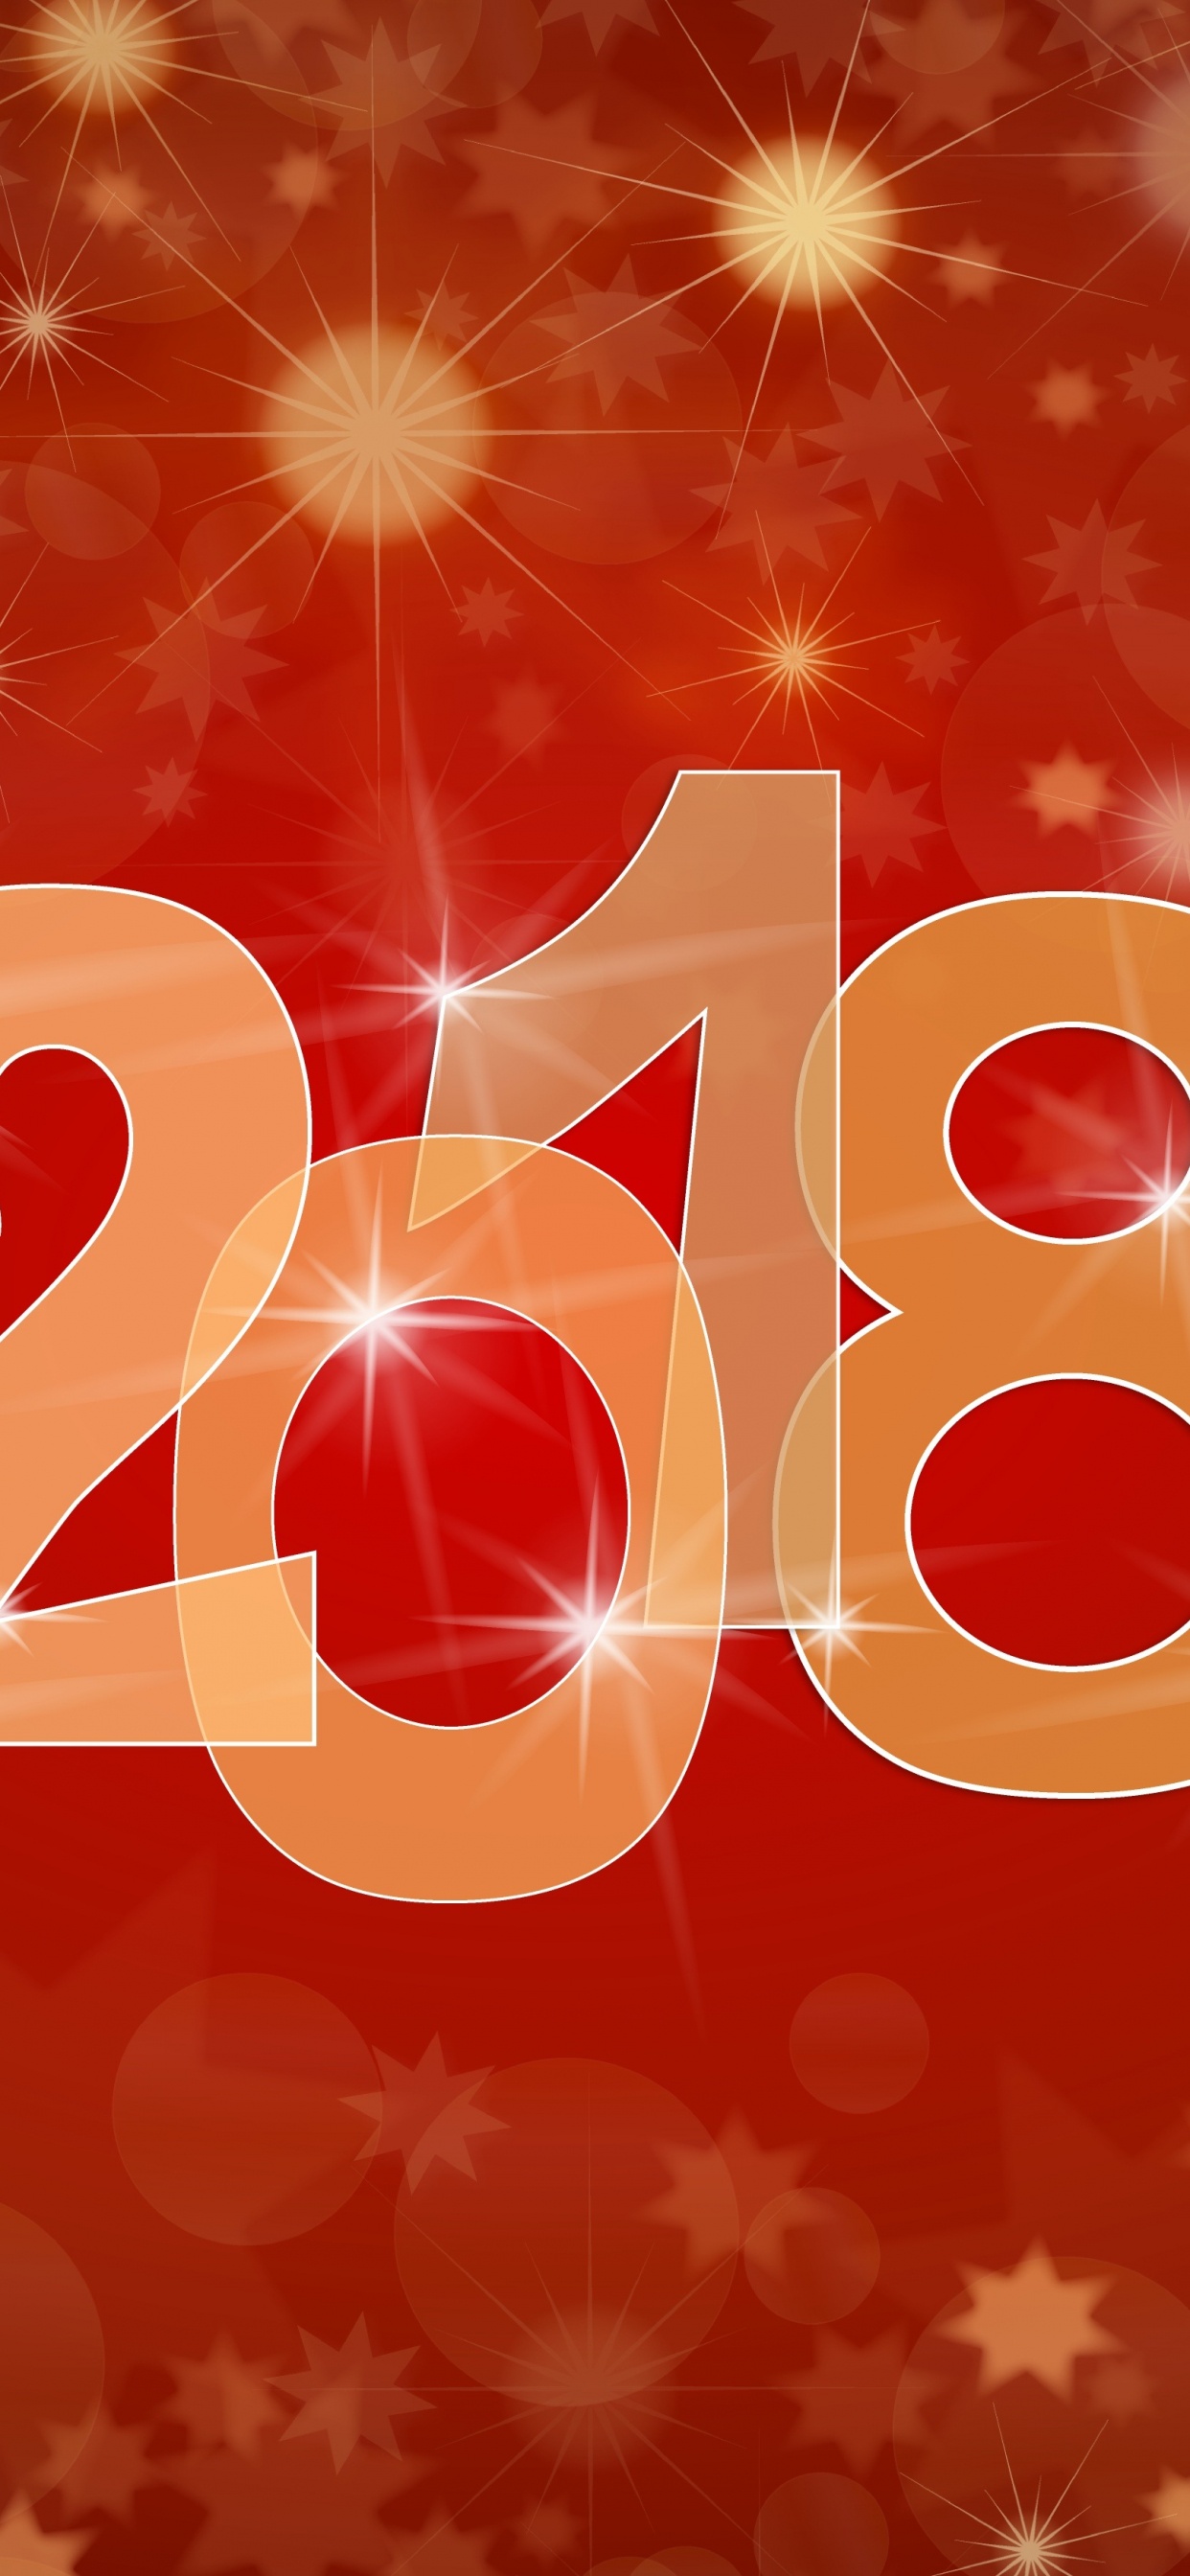 Nochevieja, Año Nuevo Chino, Texto, Coraz, el Día de Año Nuevo. Wallpaper in 1242x2688 Resolution